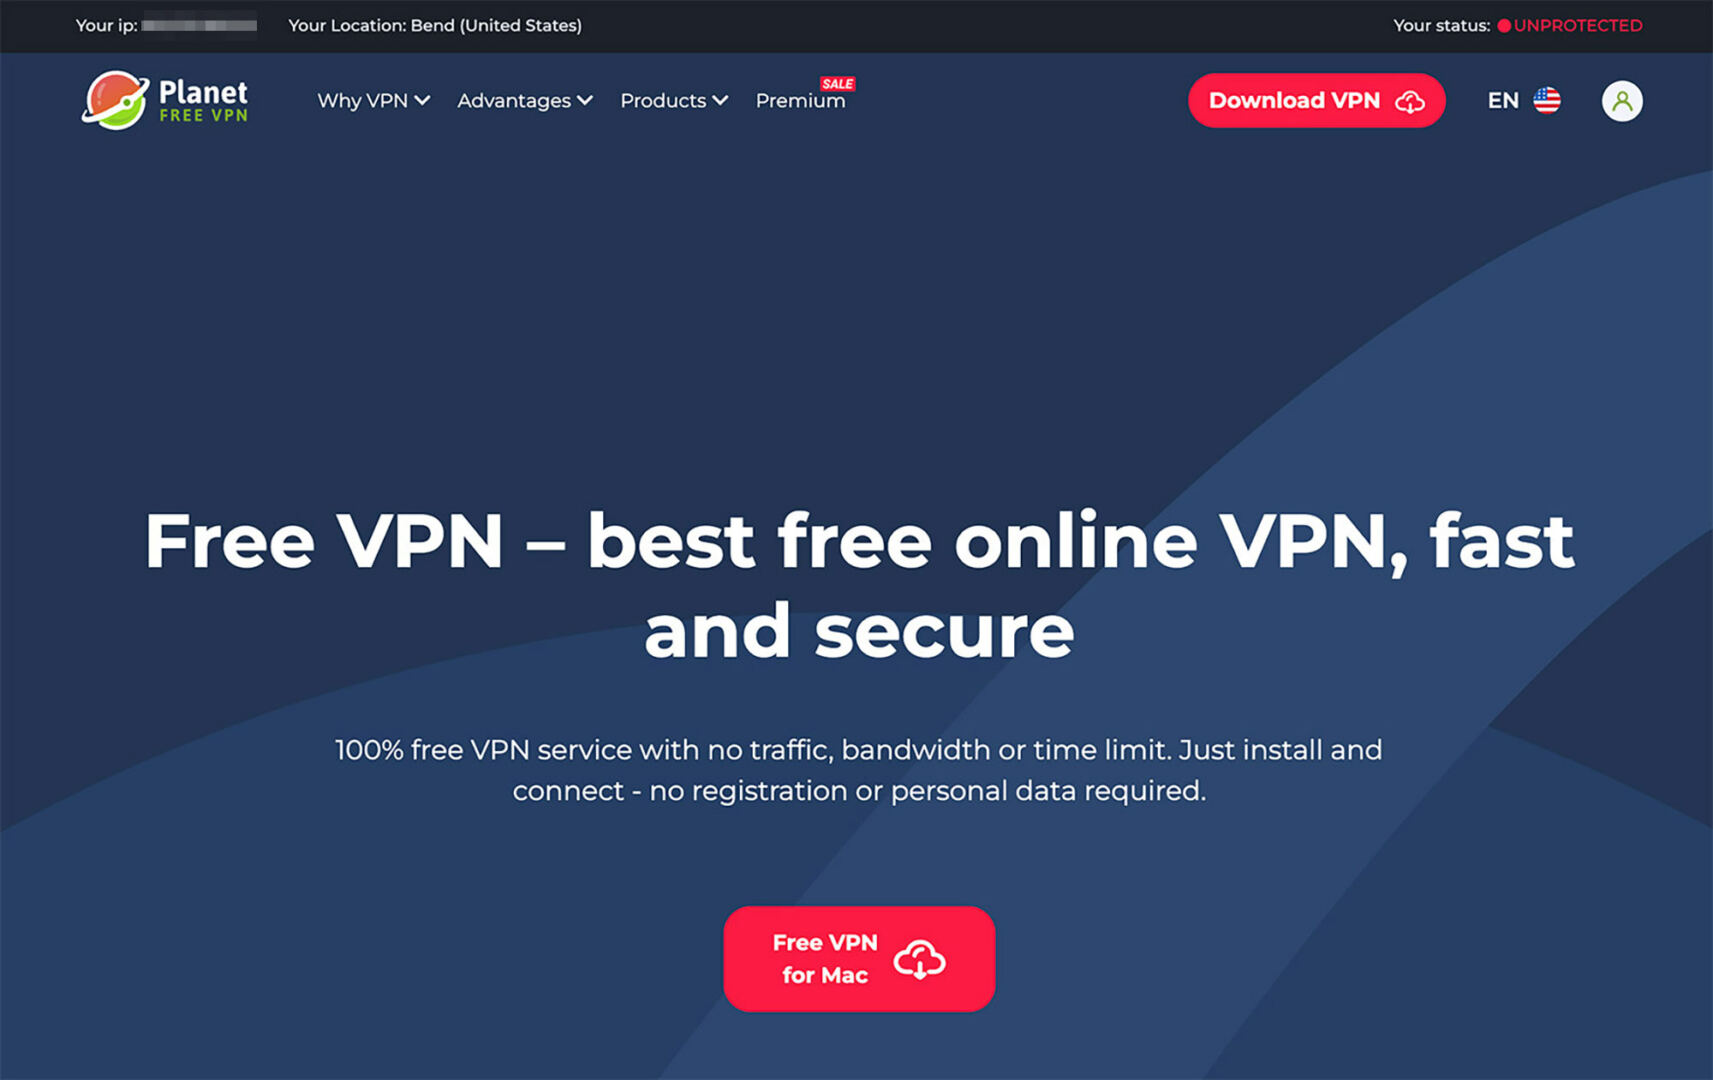 Planet VPN website